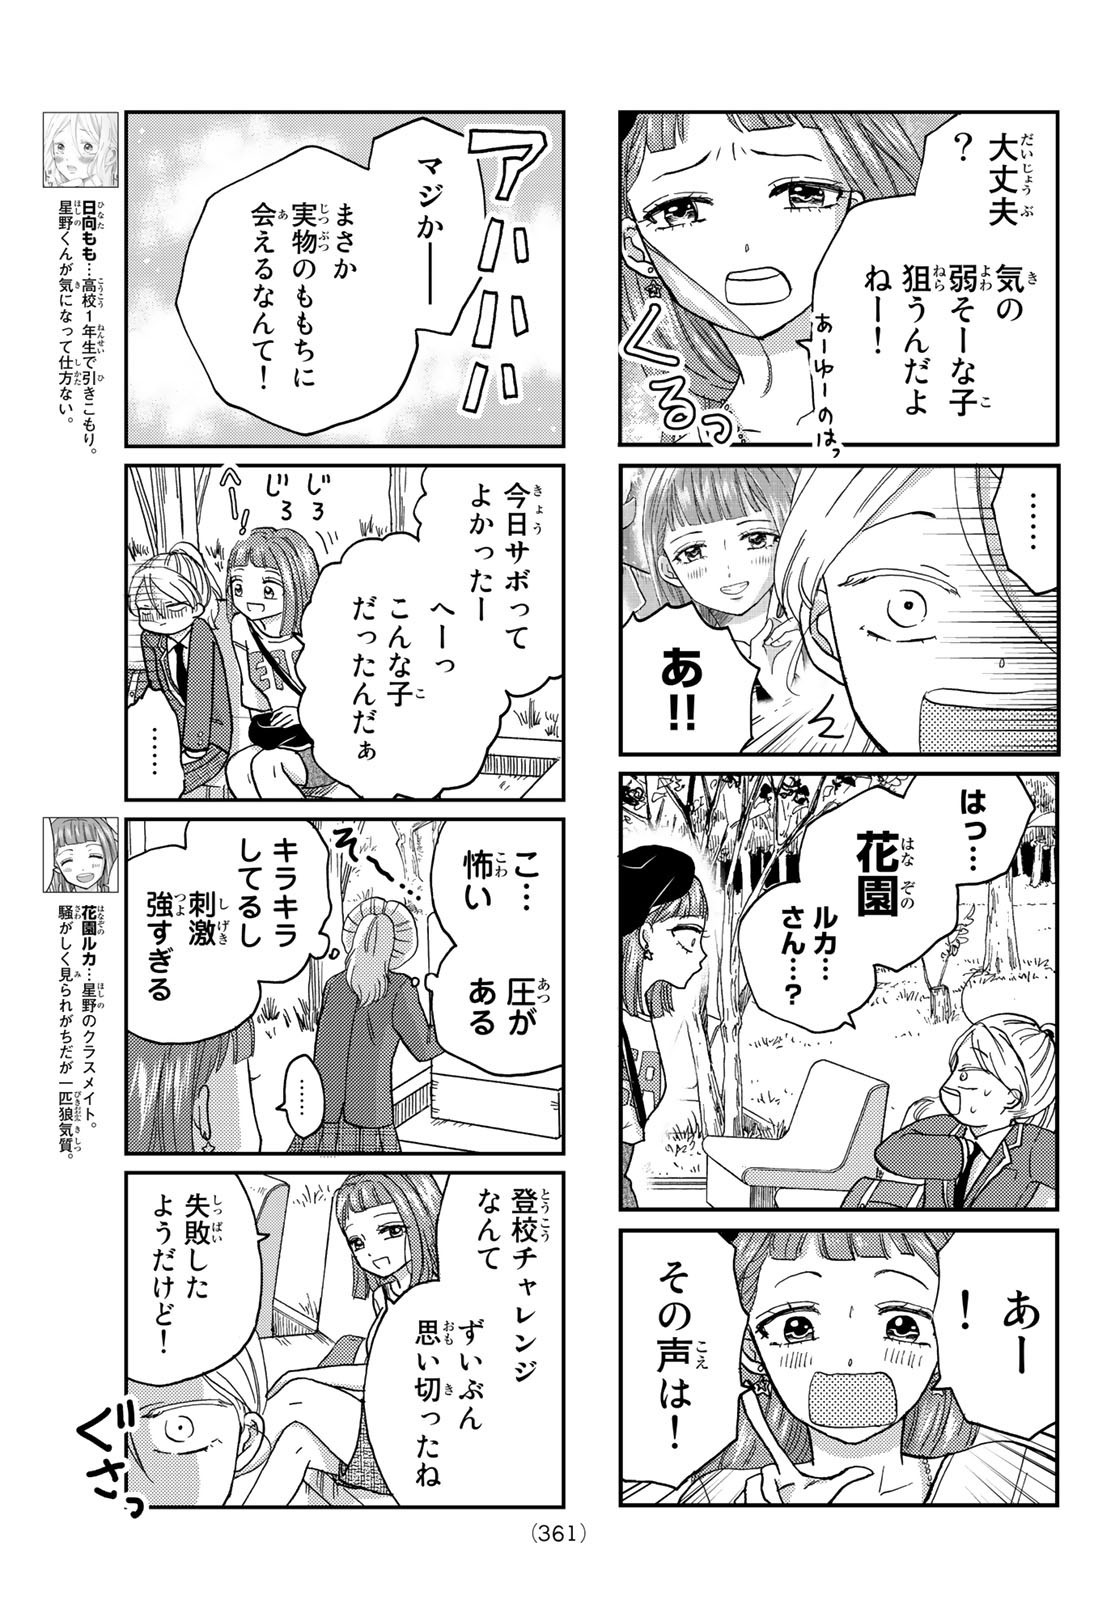 Hinata-san, Hoshino desu. - Chapter 018 - Page 3